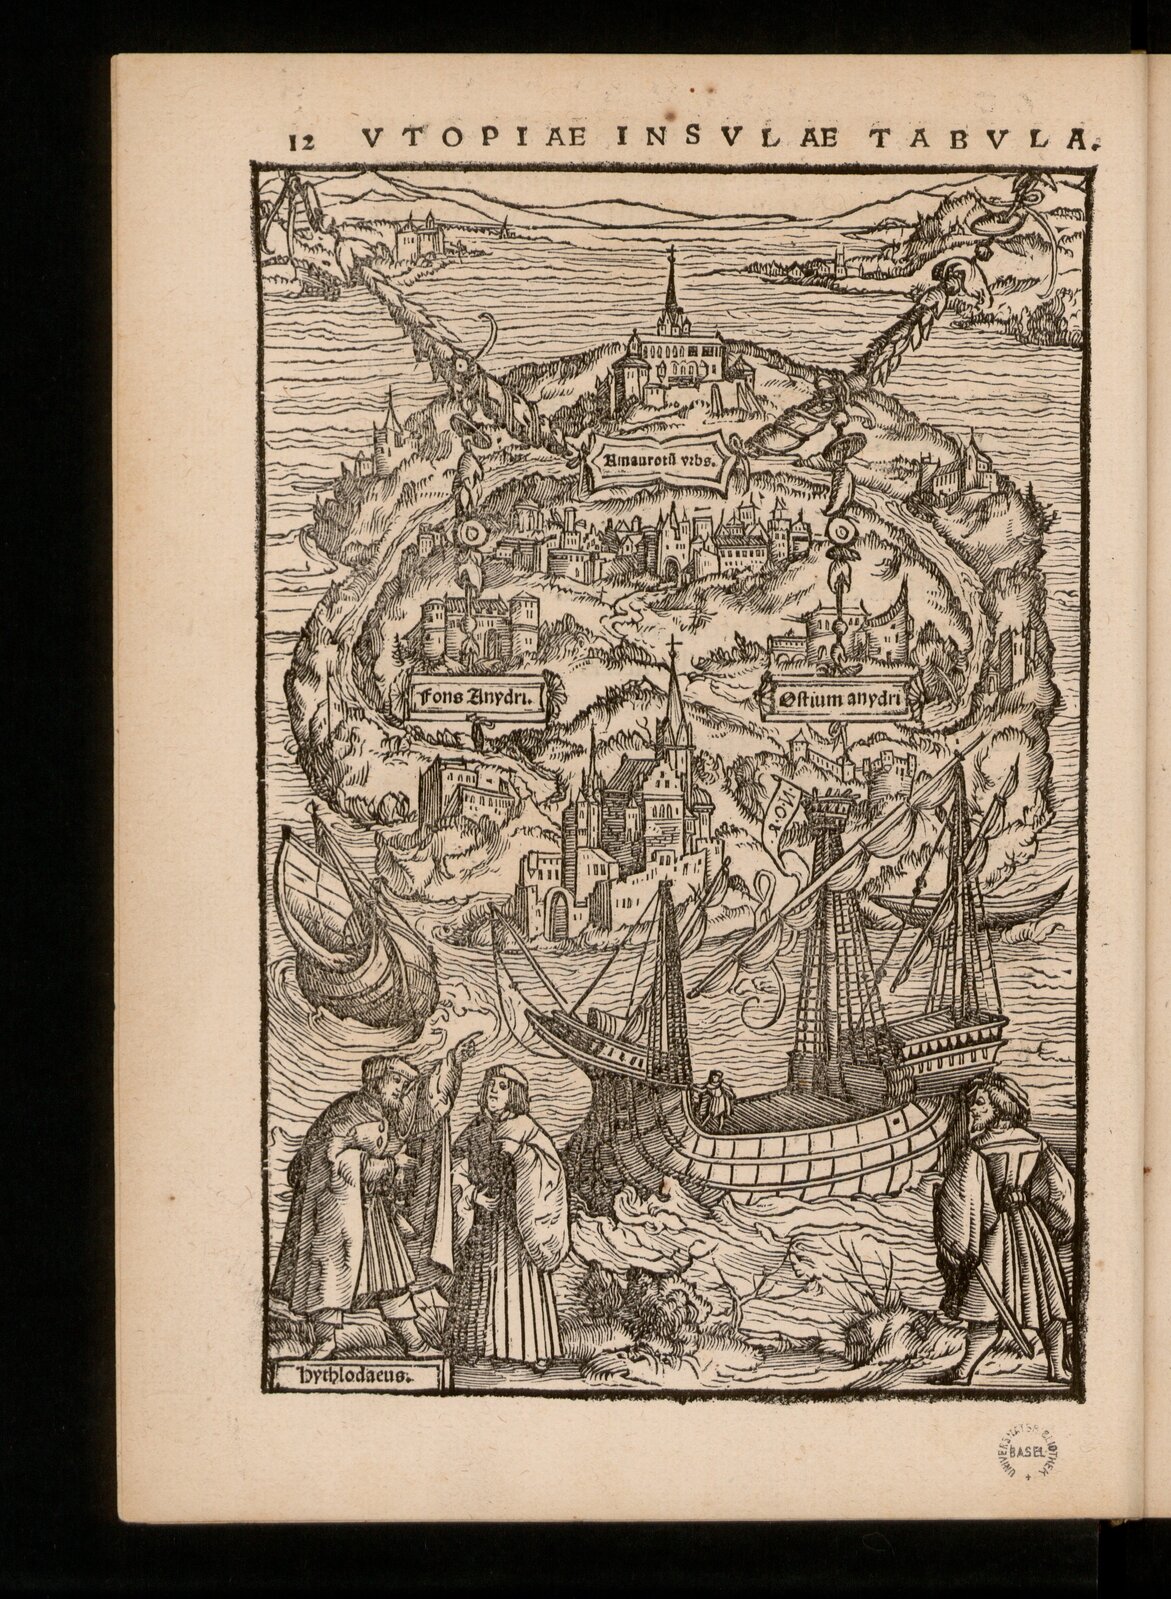 Ilustracja przedstawia rysunek miasta. Miasto znajduje się na wyspie i otoczone jest wodą. Na pierwszym planie stoi trzech mężczyzn. Mężczyzna po lewej wskazuje palcem na statek. Za mężczyznami płyną dwa statki.